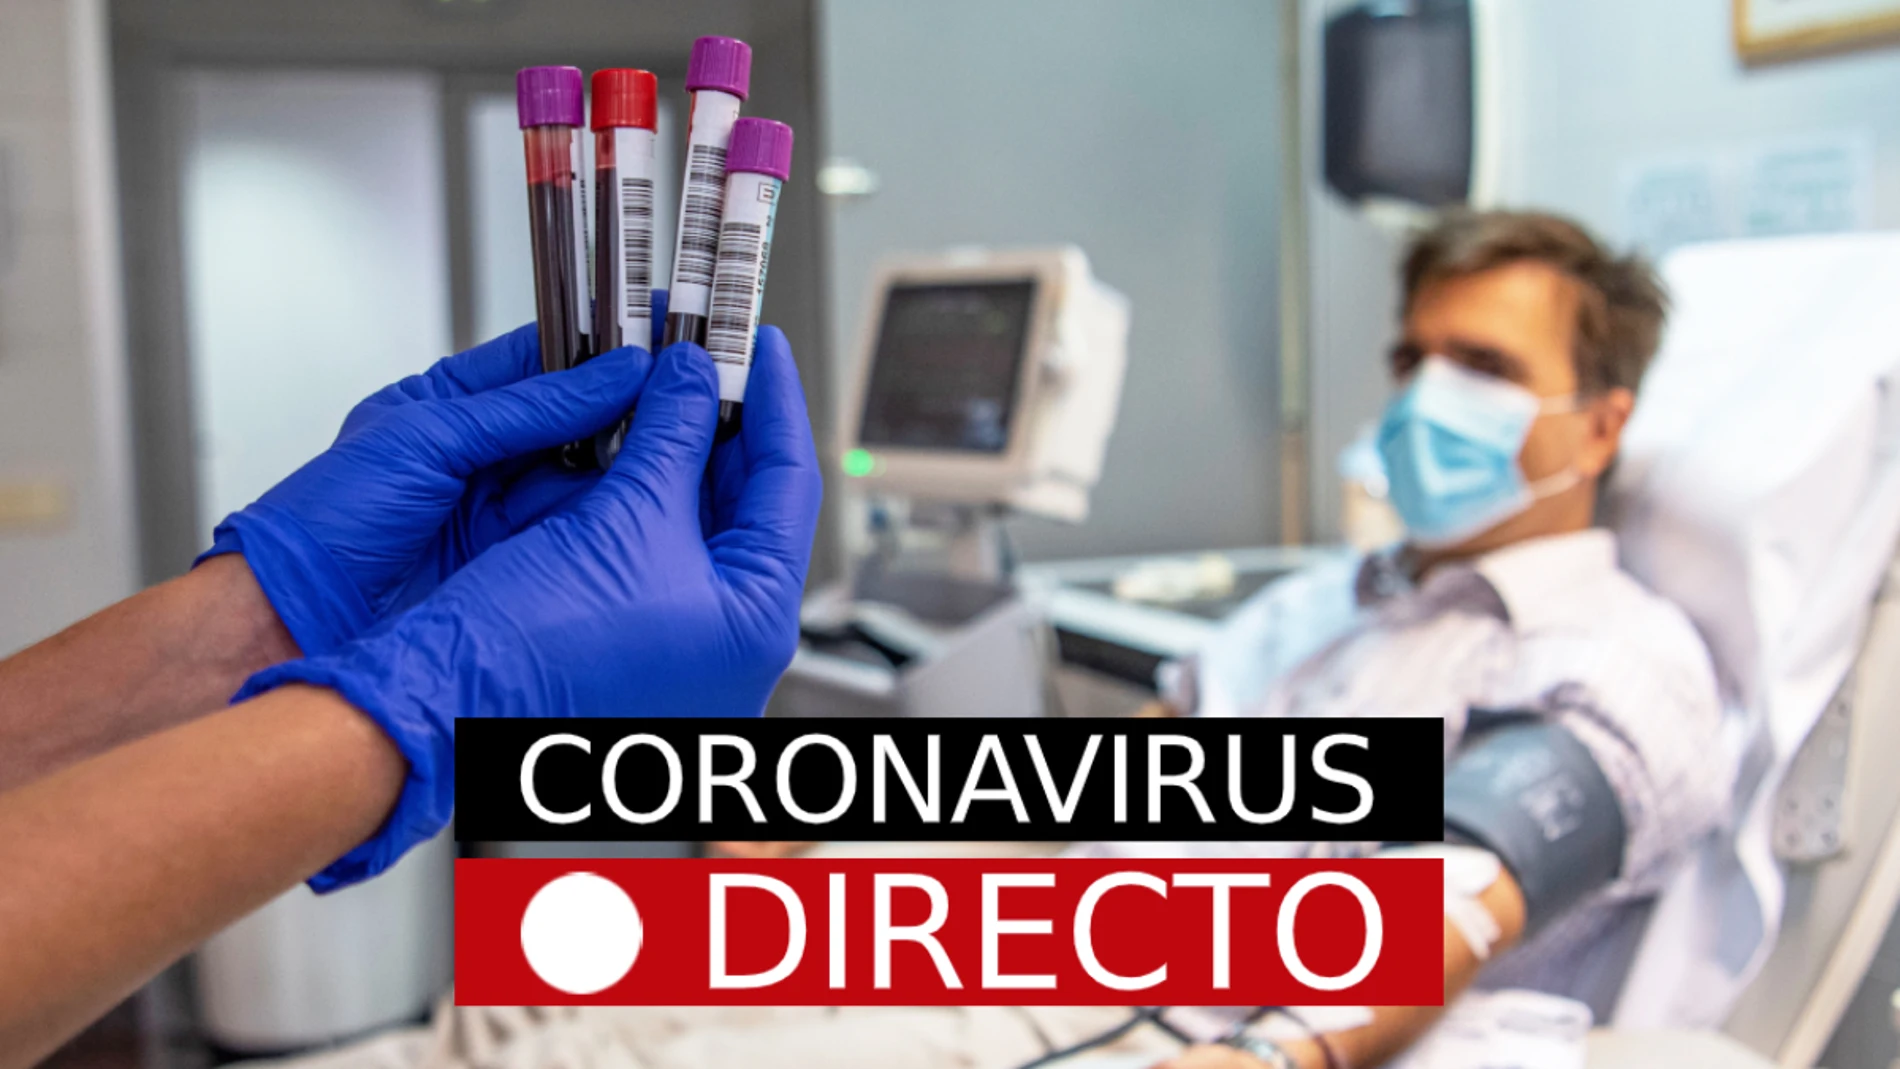 Coronavirus en España y Madrid: Última hora sobre los casos, contagios y restricciones por COVID-19, en DIRECTO